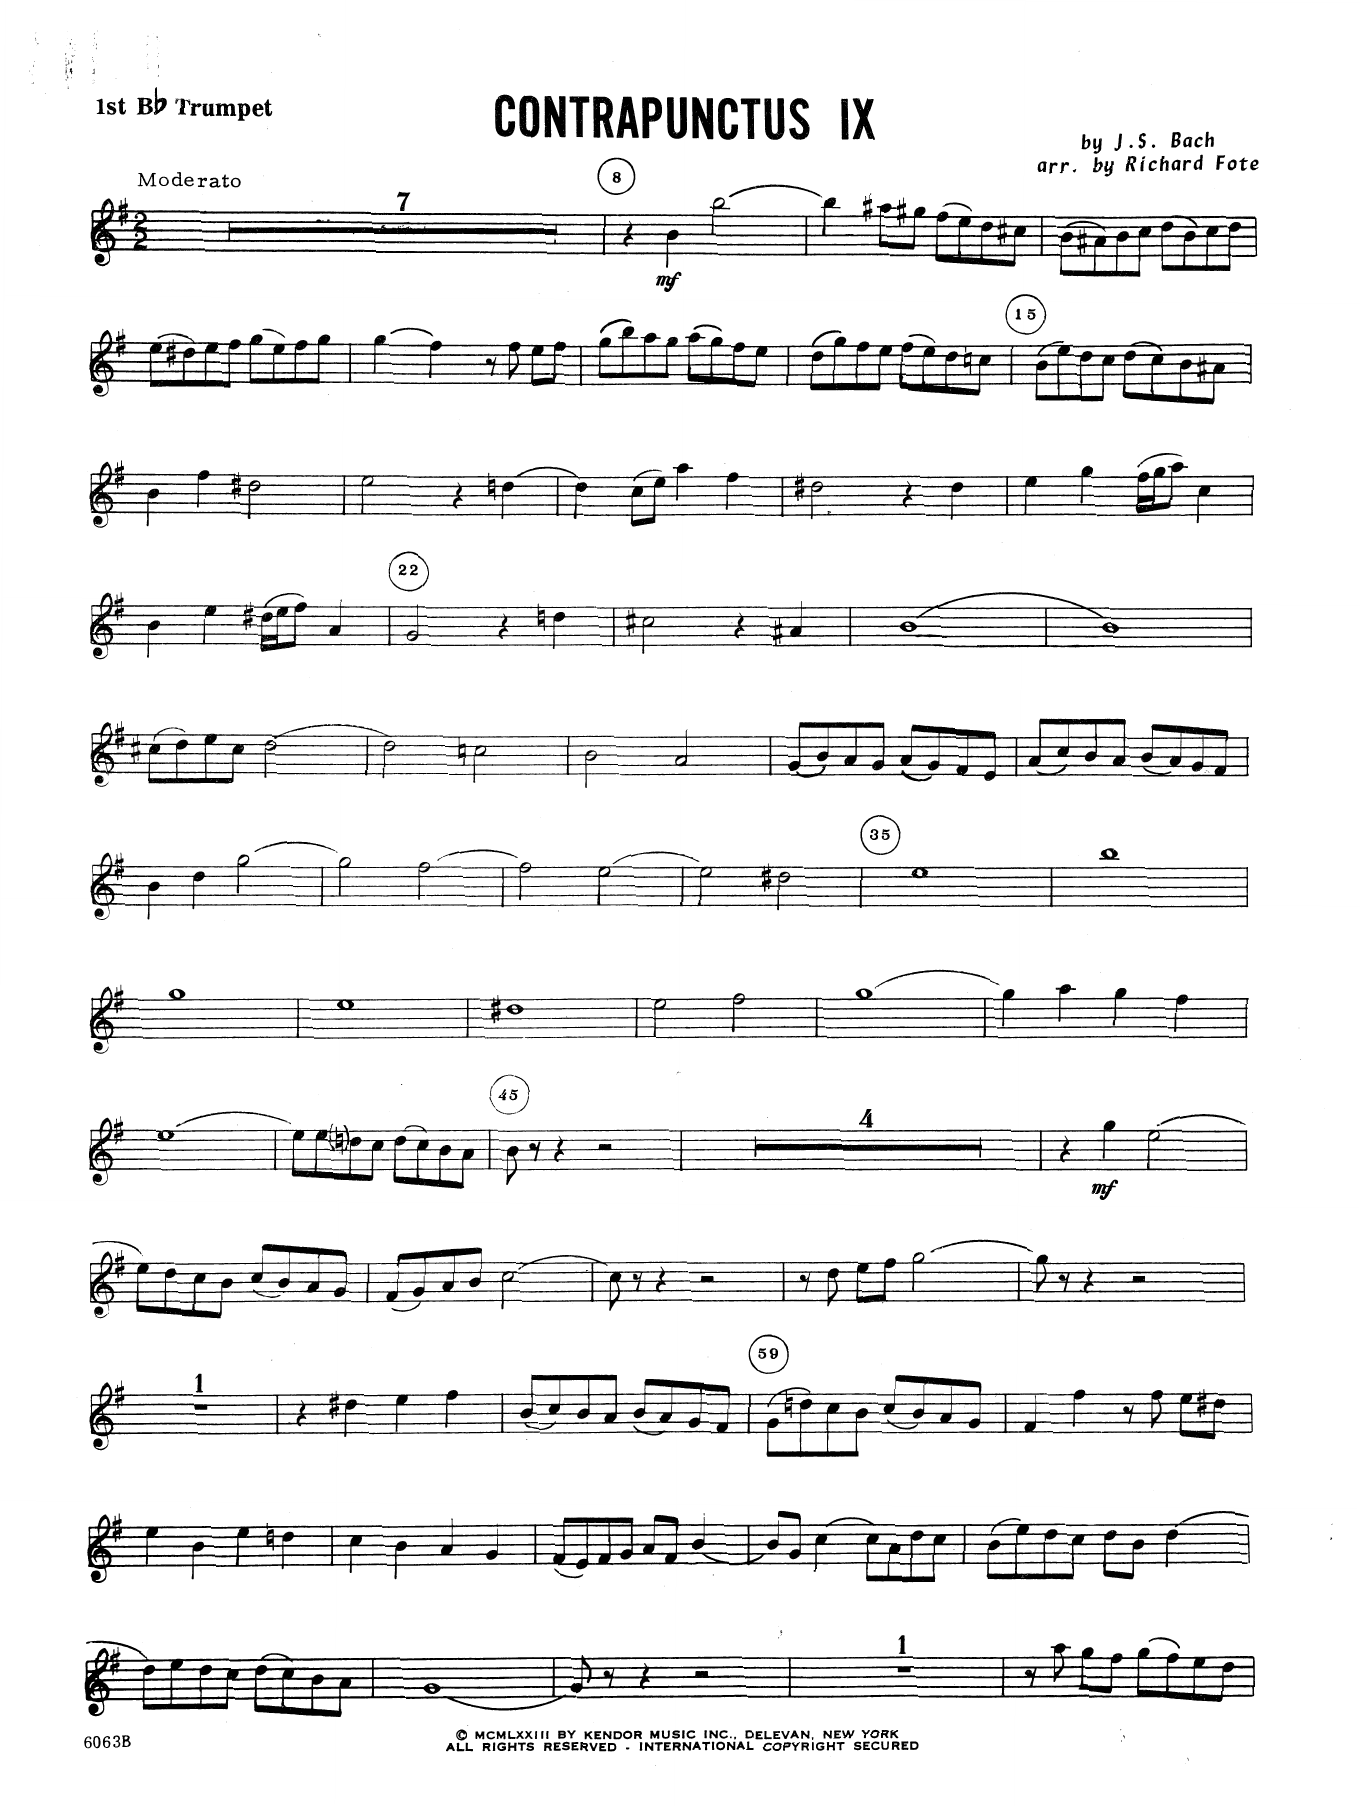 Download J.S. Bach Contrapunctus IX (arr. Richard Fote) - Sheet Music